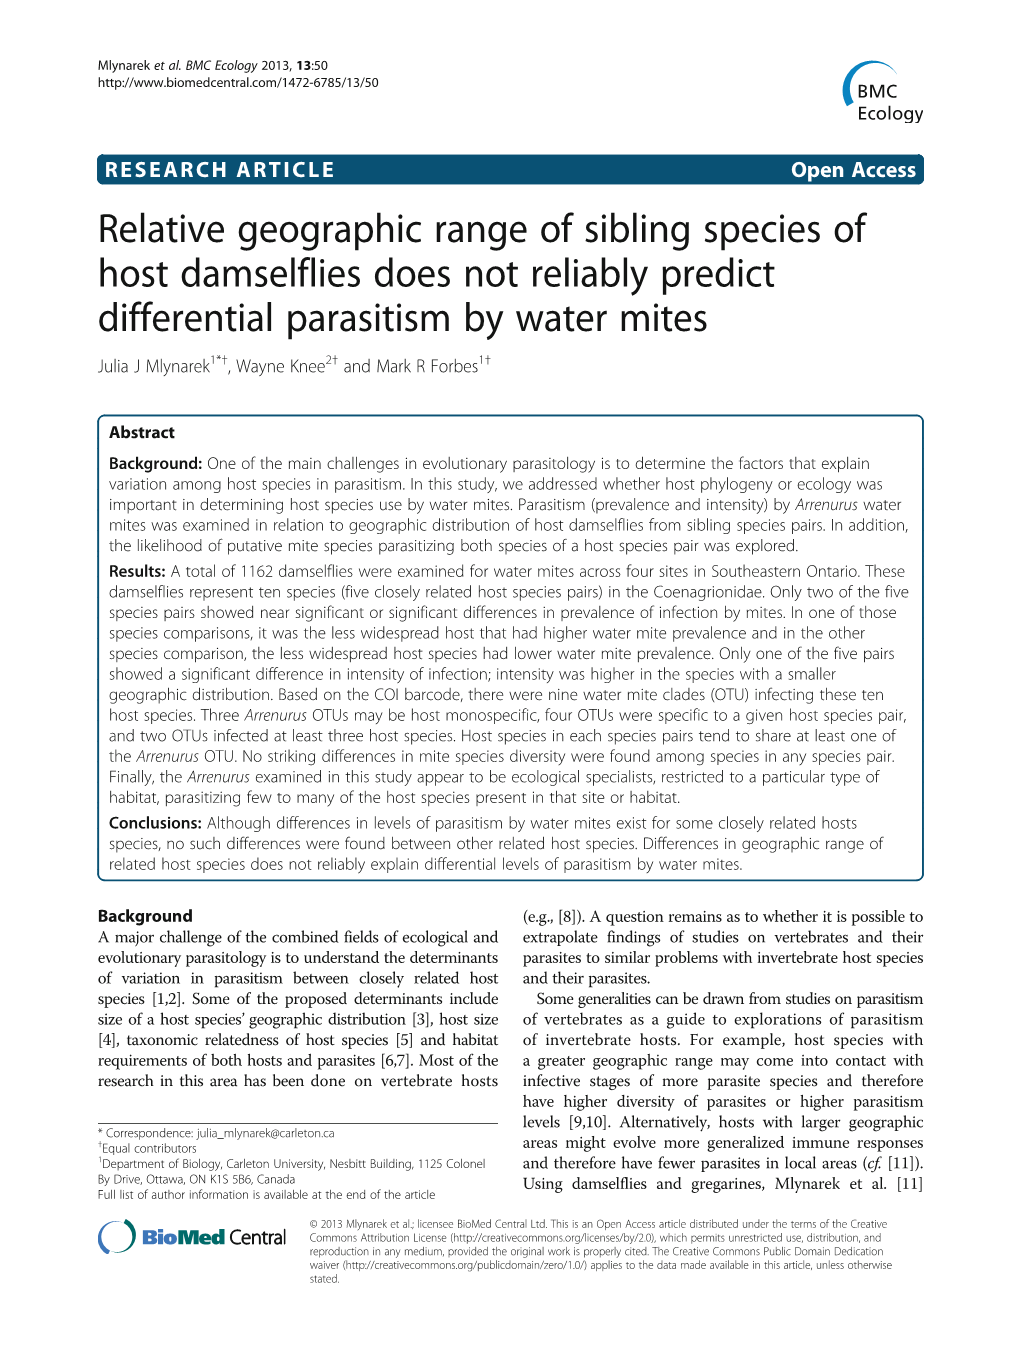 Relative Geographic Range of Sibling Species of Host Damselflies Does